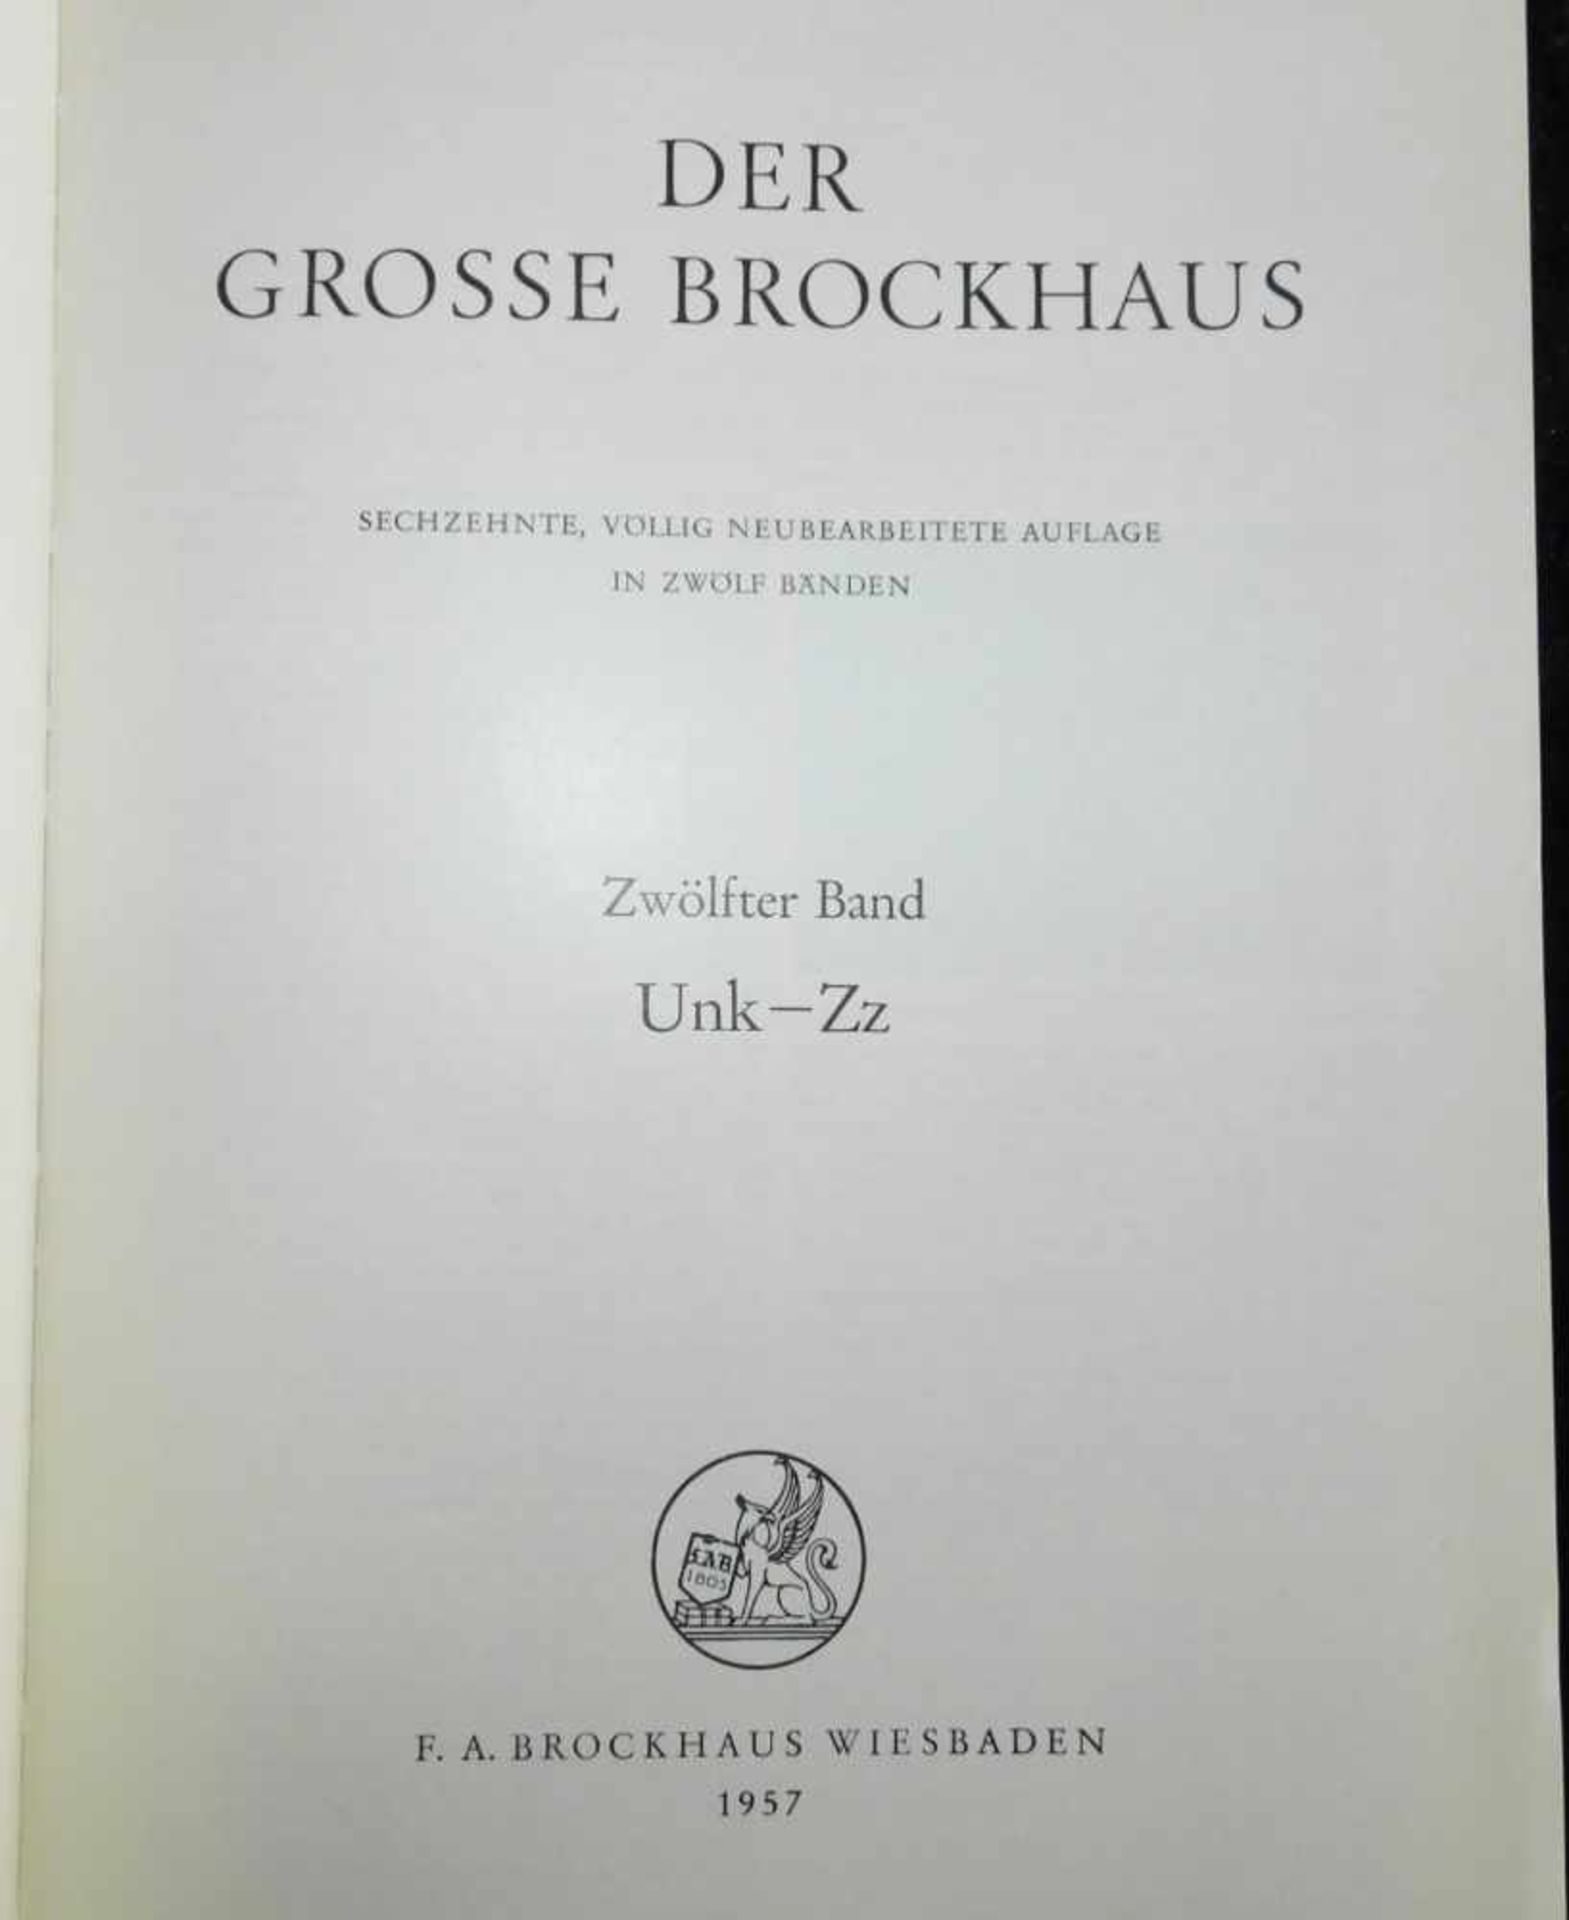 Der grosse Brockhaus,12 Bände, 16. völlig neu überarb. Auflage, F.A. Brockhaus Wiesbaden 1952- - Image 3 of 3